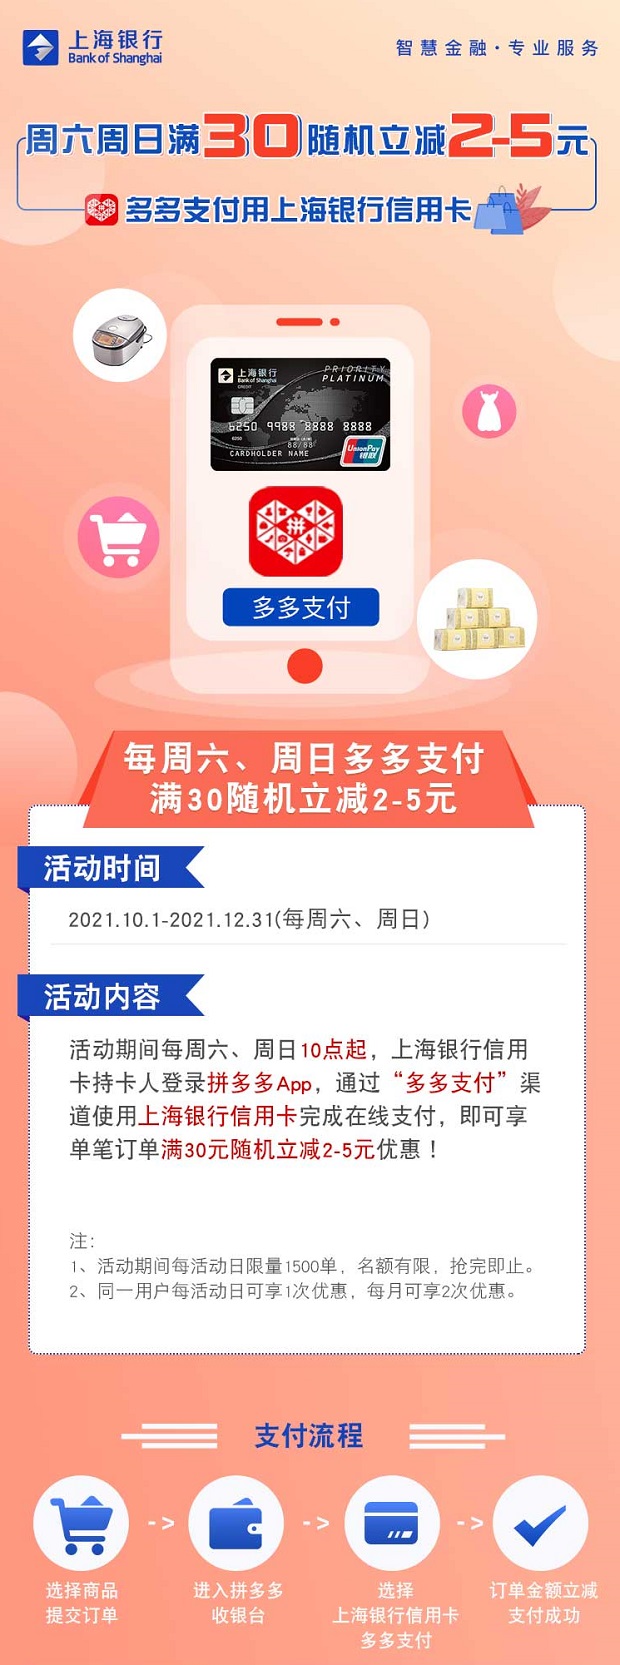 上海银行信用卡每周六、周日多多支付满30随机立减2-5元